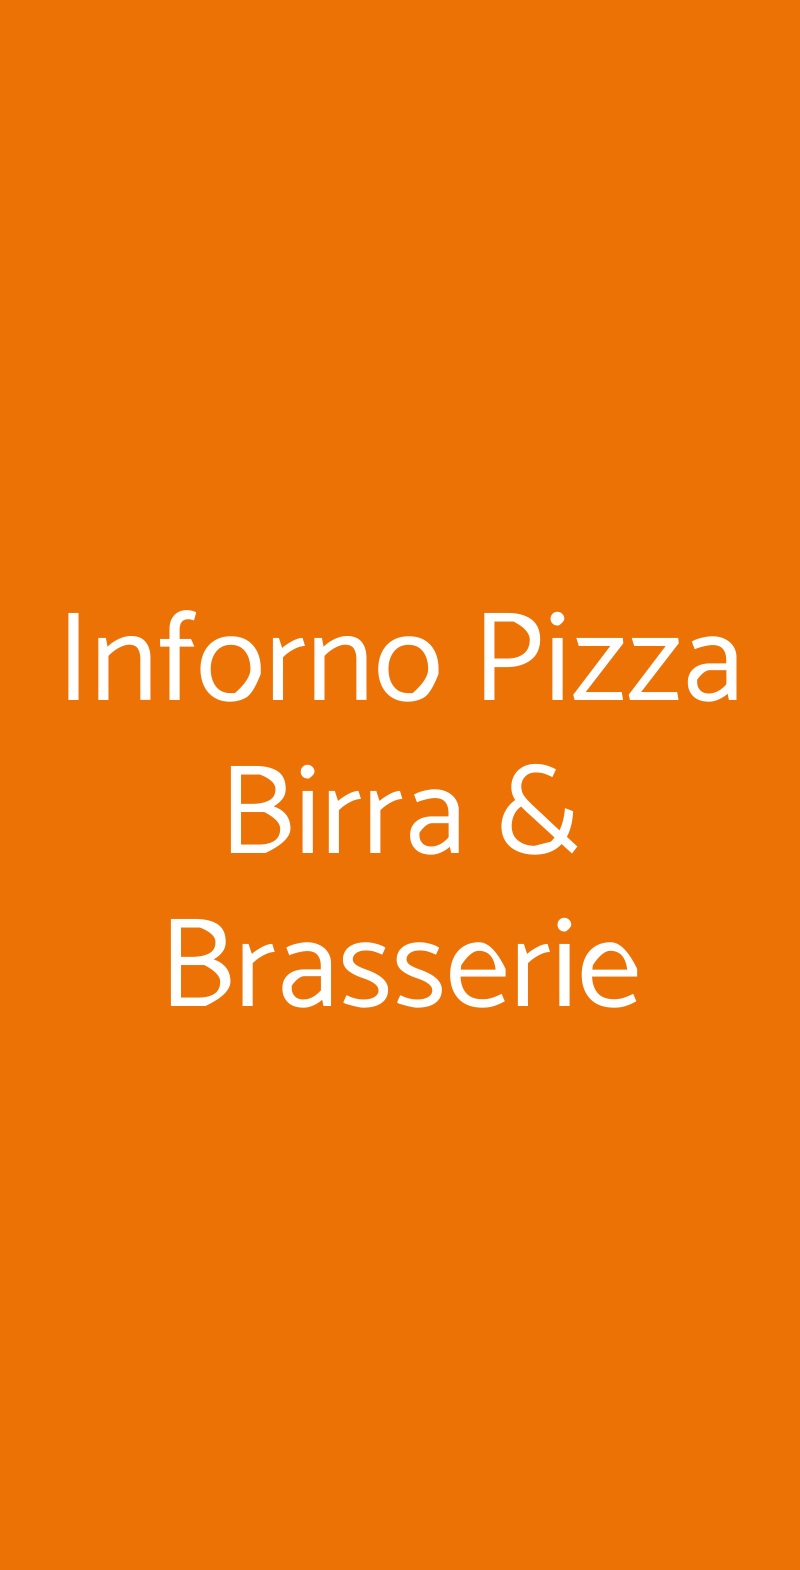 Inforno Pizza Birra & Brasserie Lido di Ostia menù 1 pagina